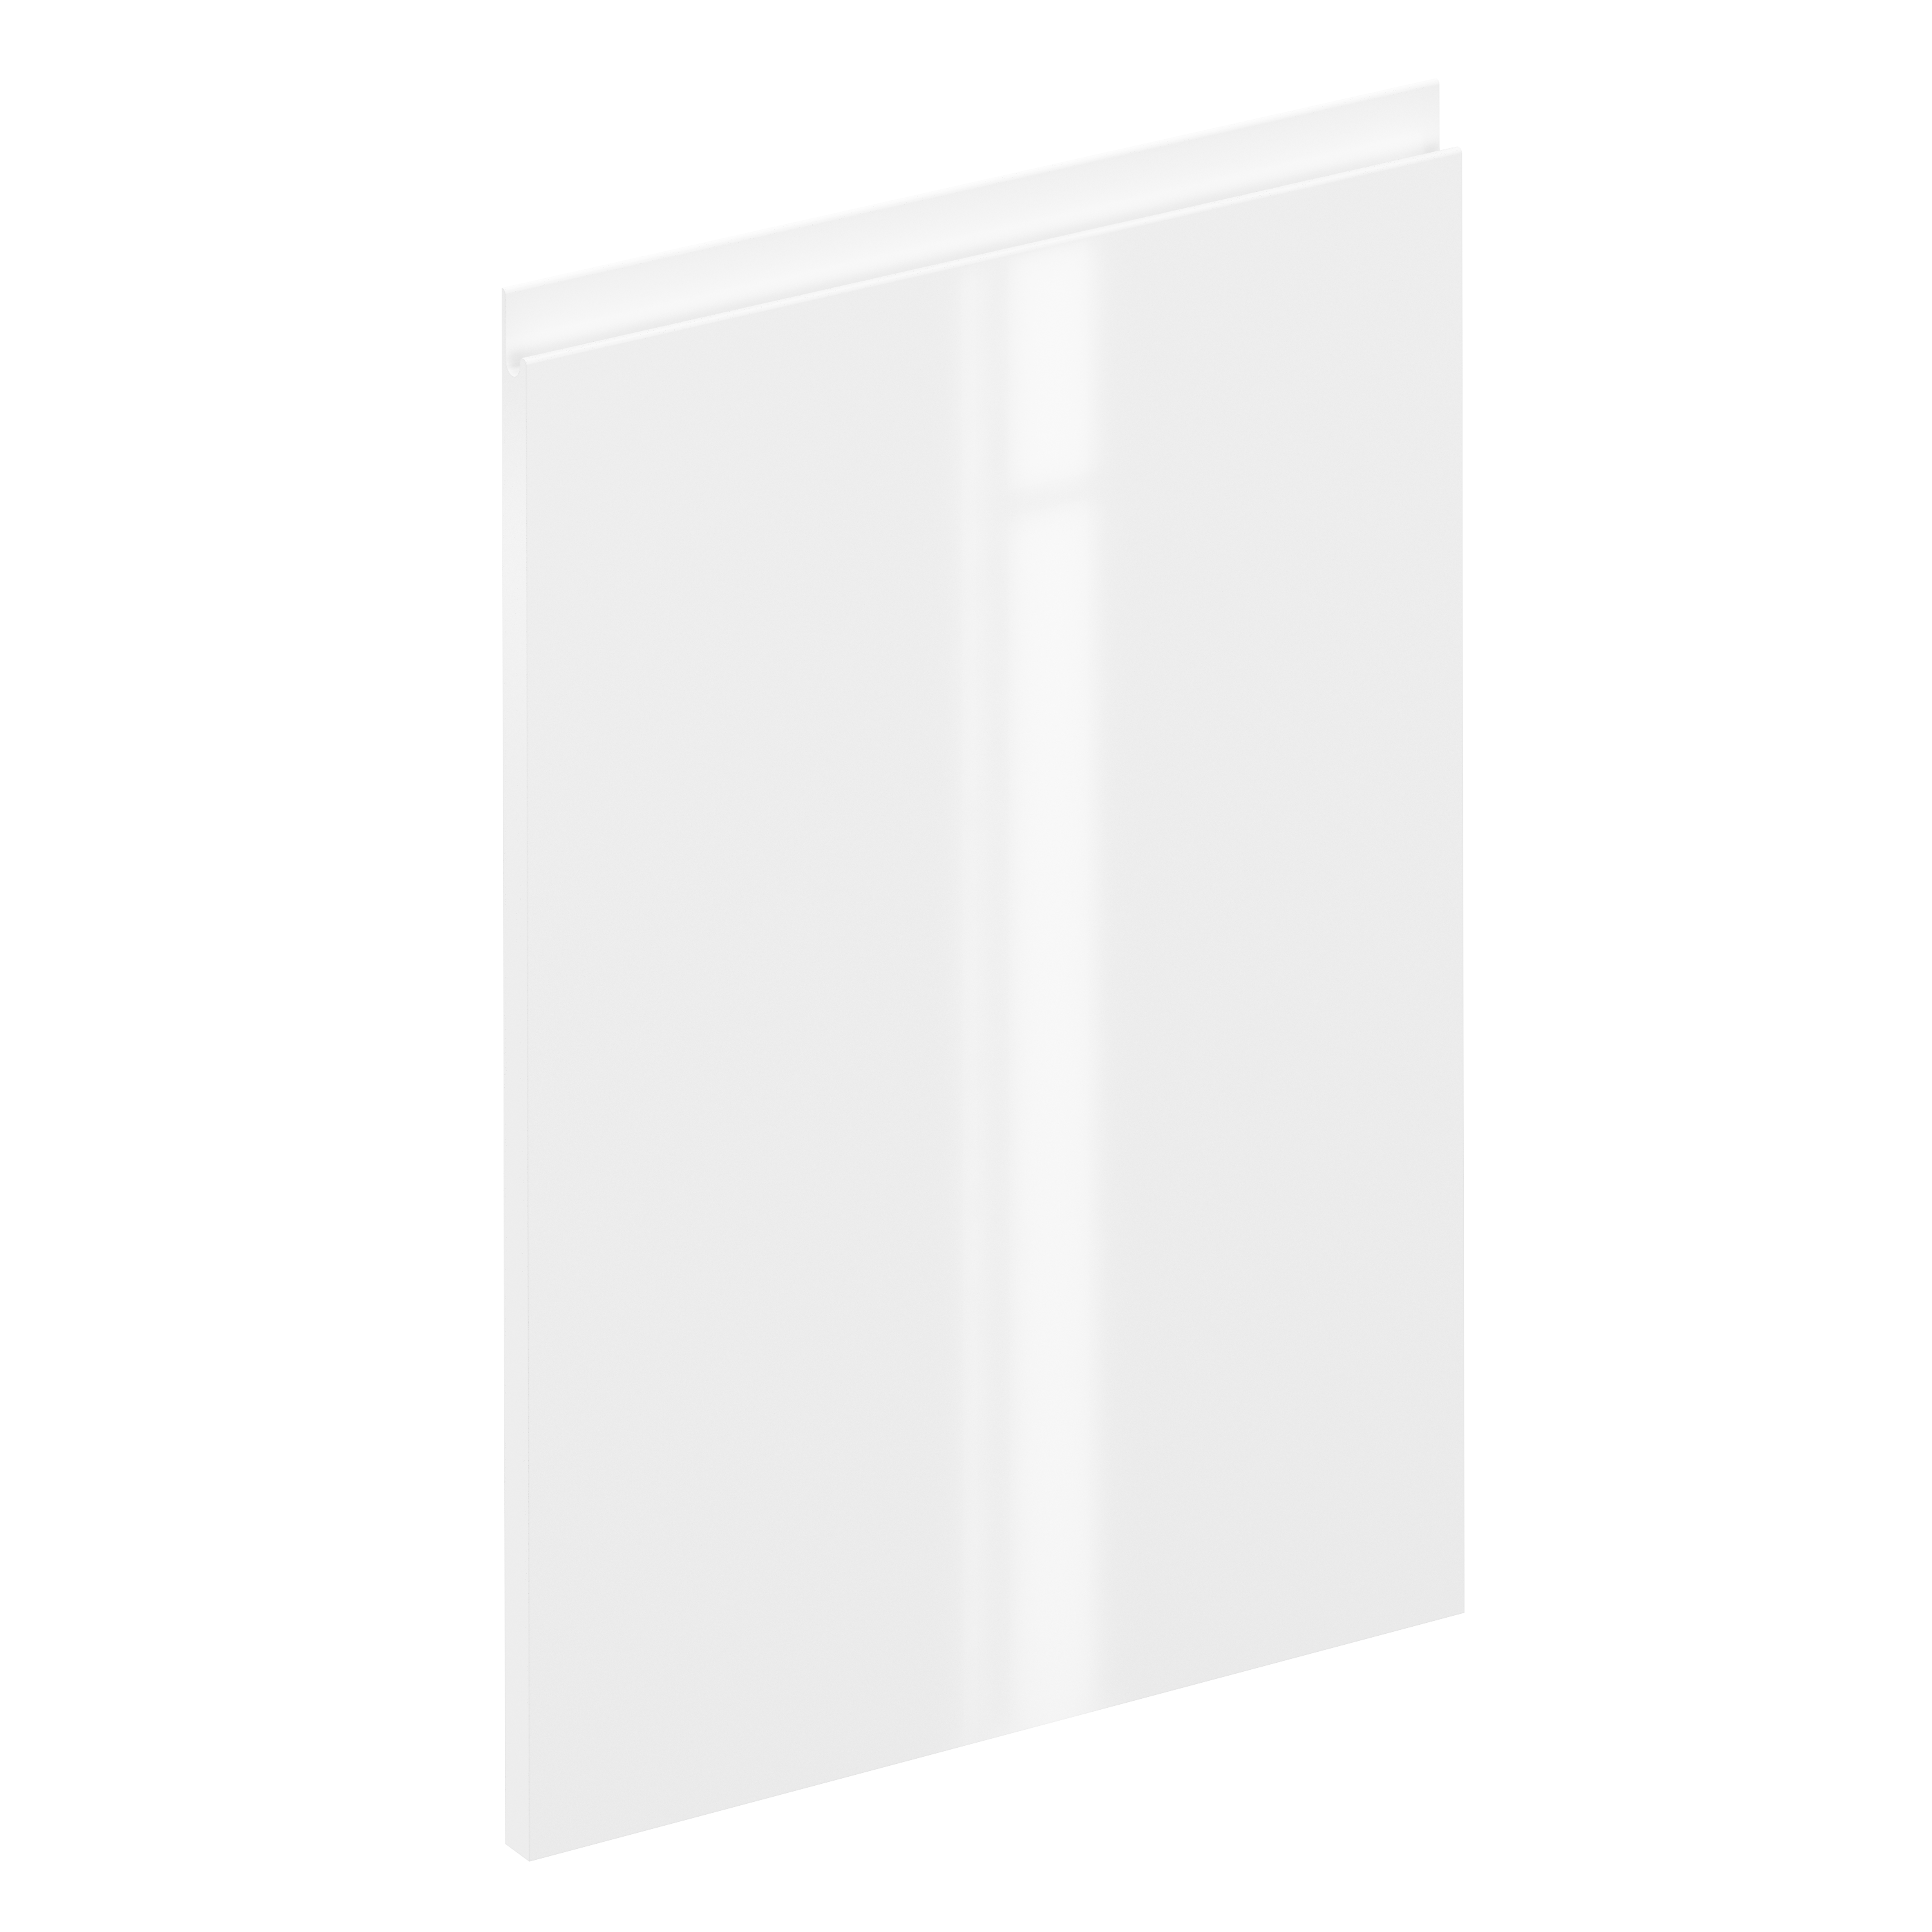 Puerta para mueble de cocina tokyo blanco brillo h 64 x l 45 cm